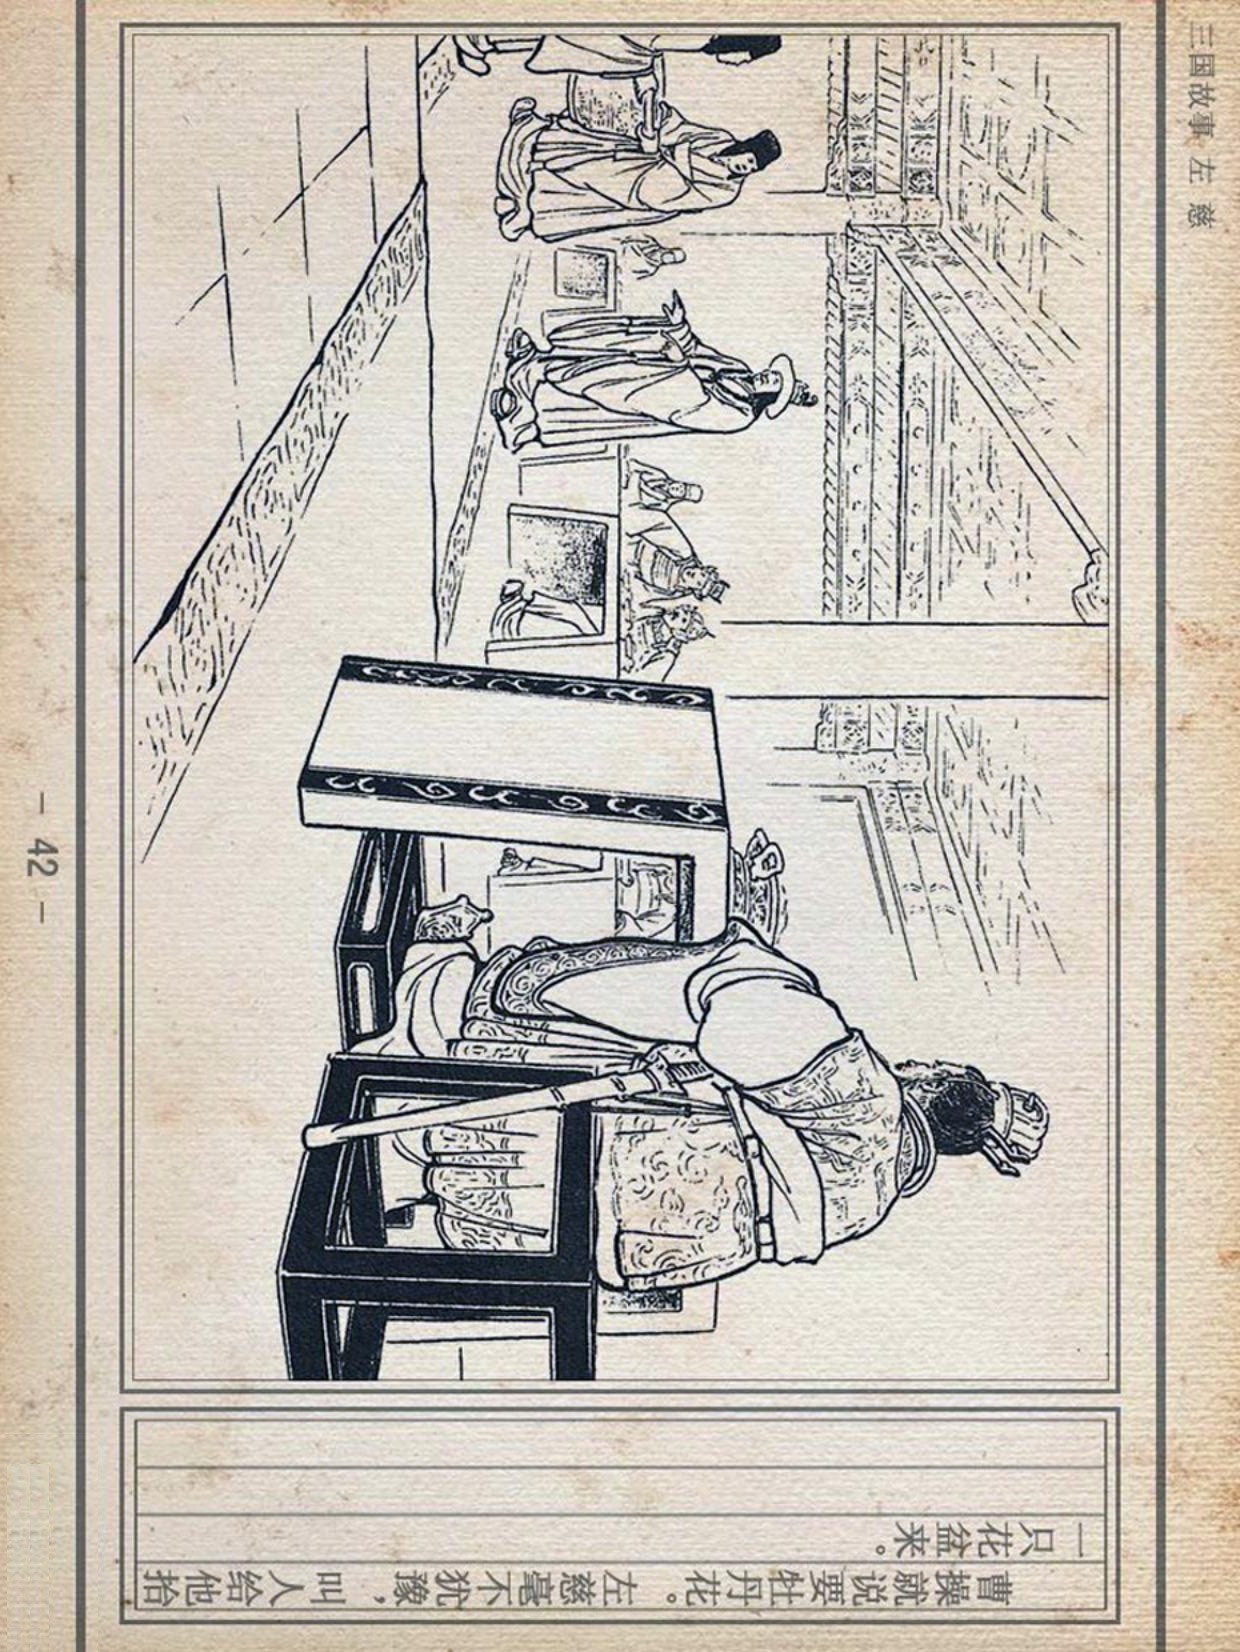 「横屏」1956年初版经典连环画《左慈》上海人民美术出版社出版